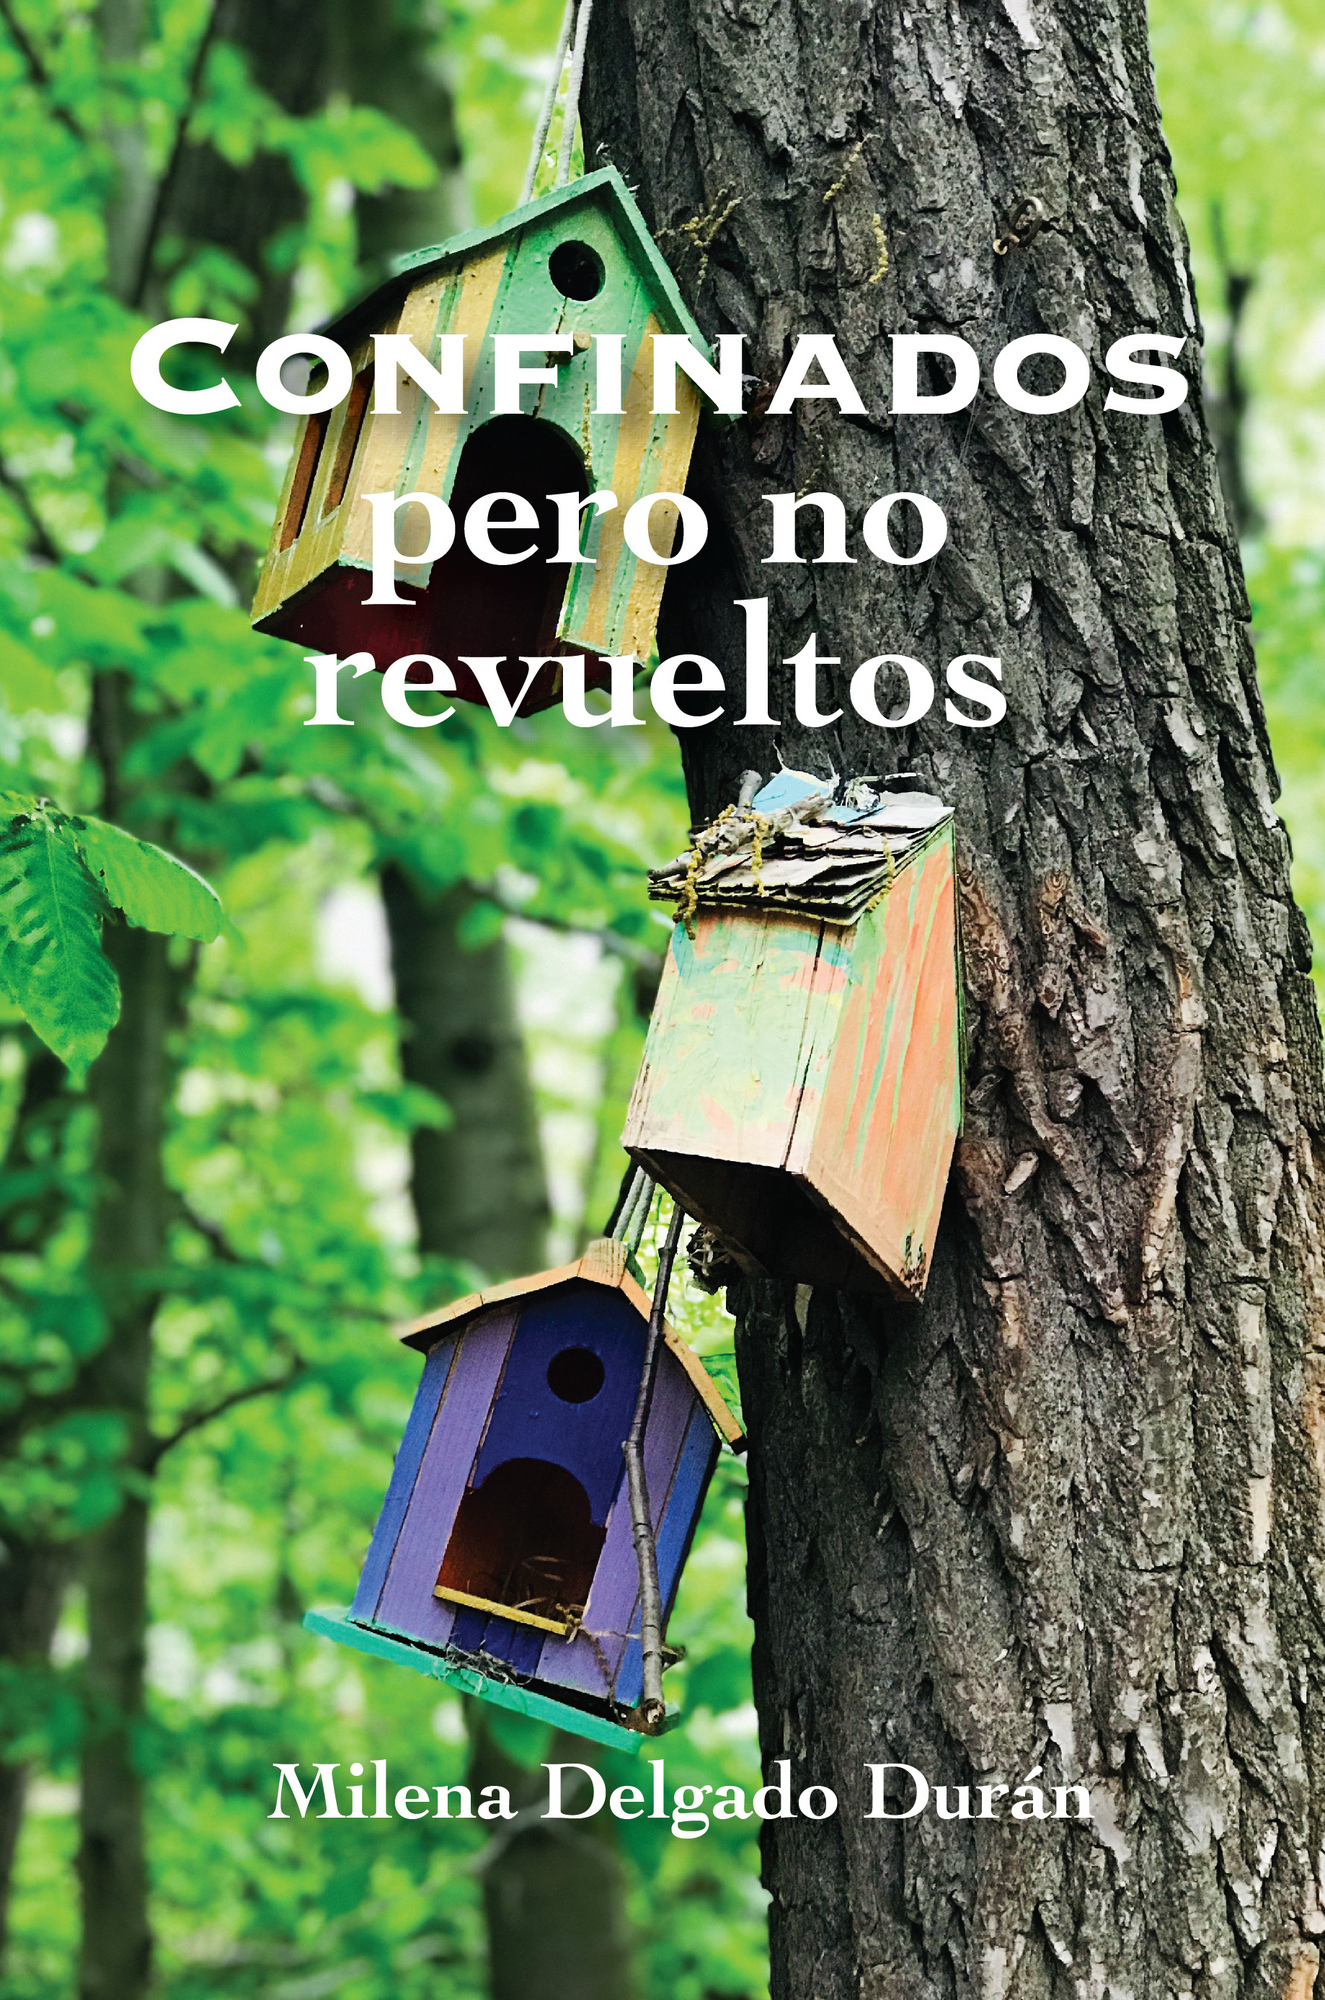 “Confinados, pero no revueltos” la nueva entrega de la escritora Milena Delgado Durán